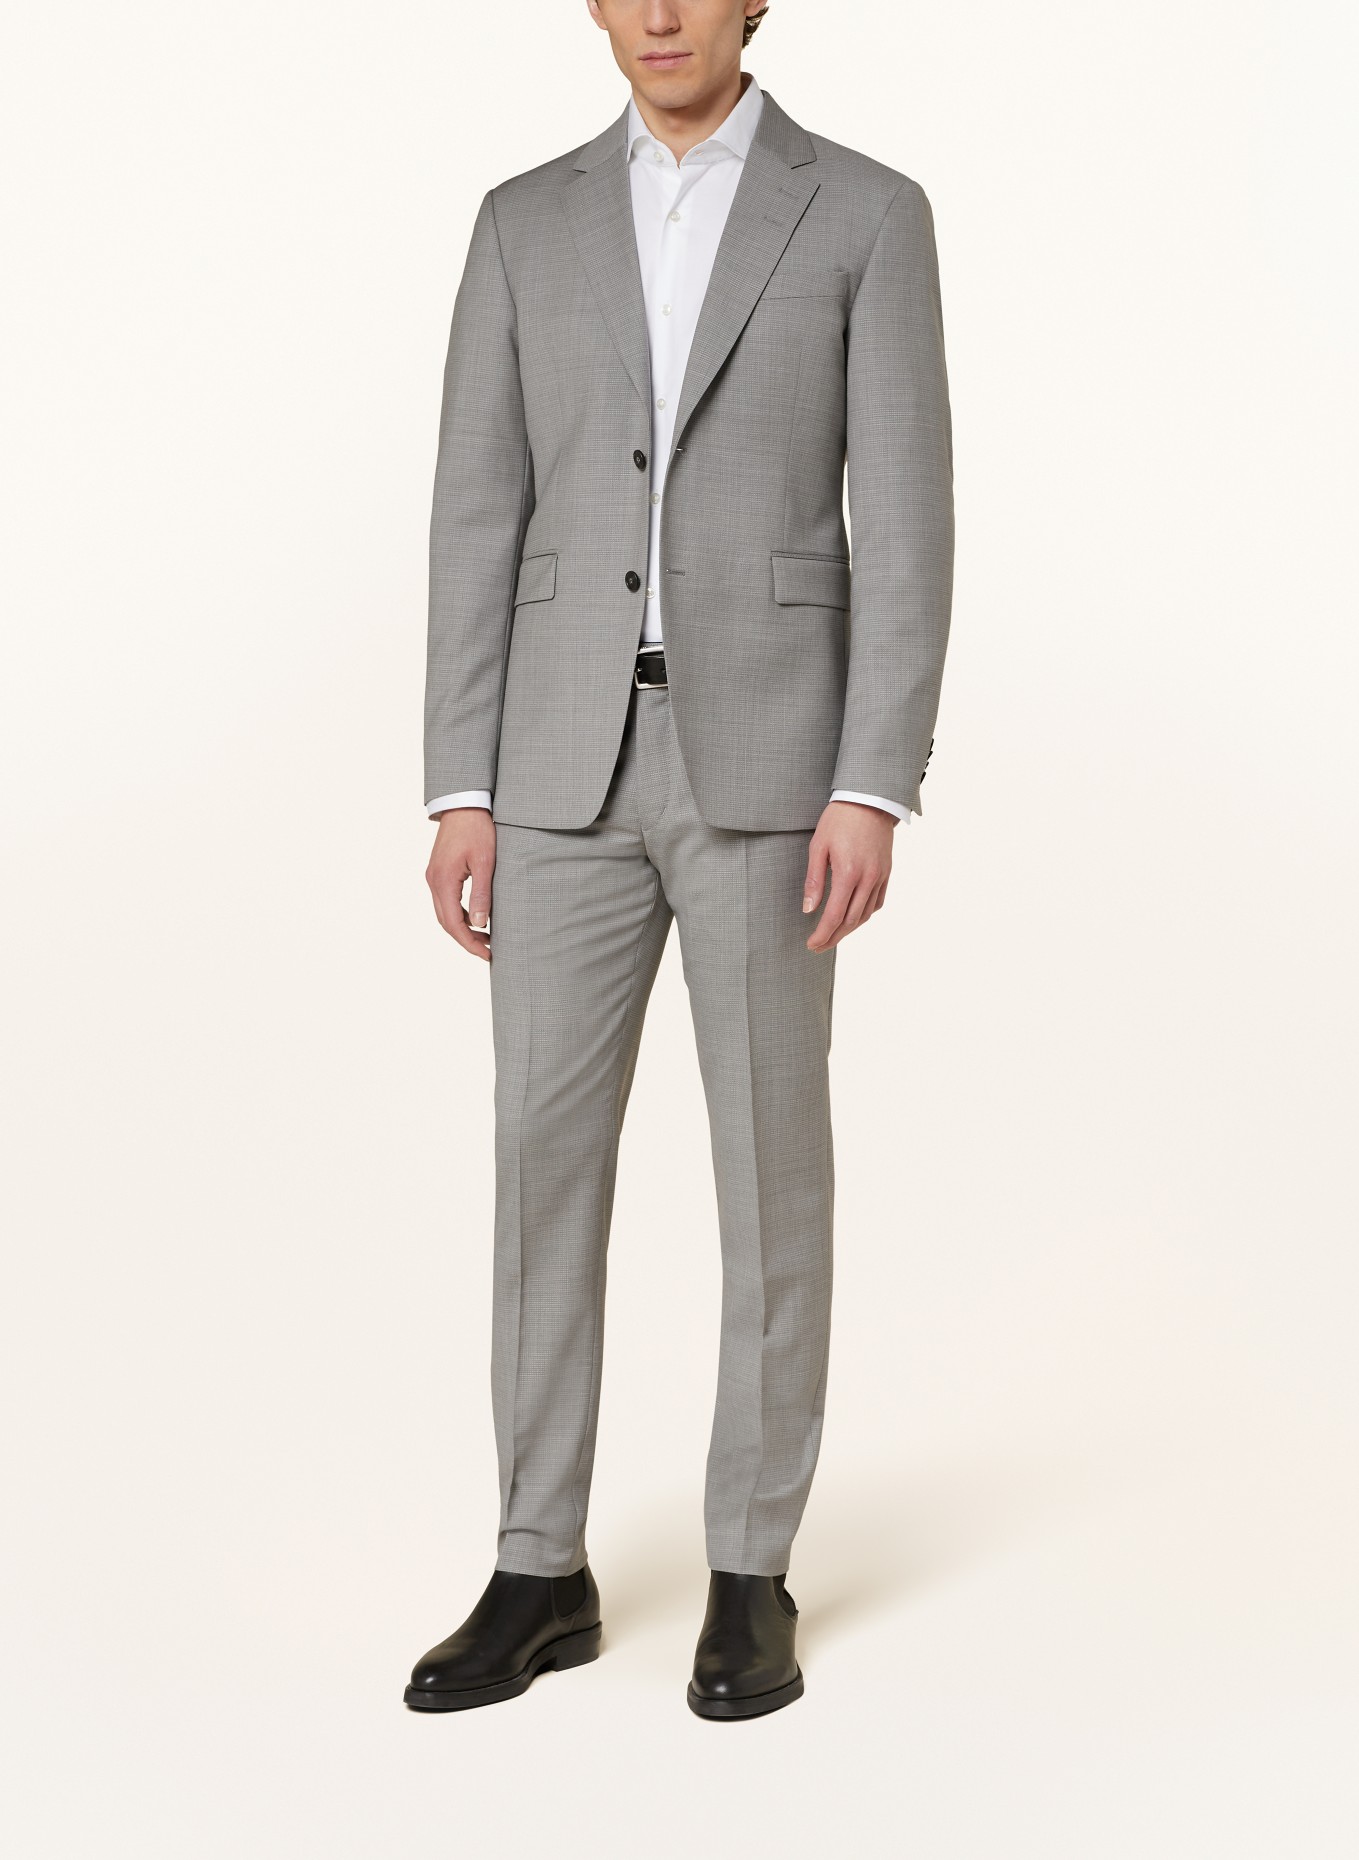 TIGER OF SWEDEN Suit jacket JUSTIN slim fit, Color: M04 Light Grey Melange (Image 2)